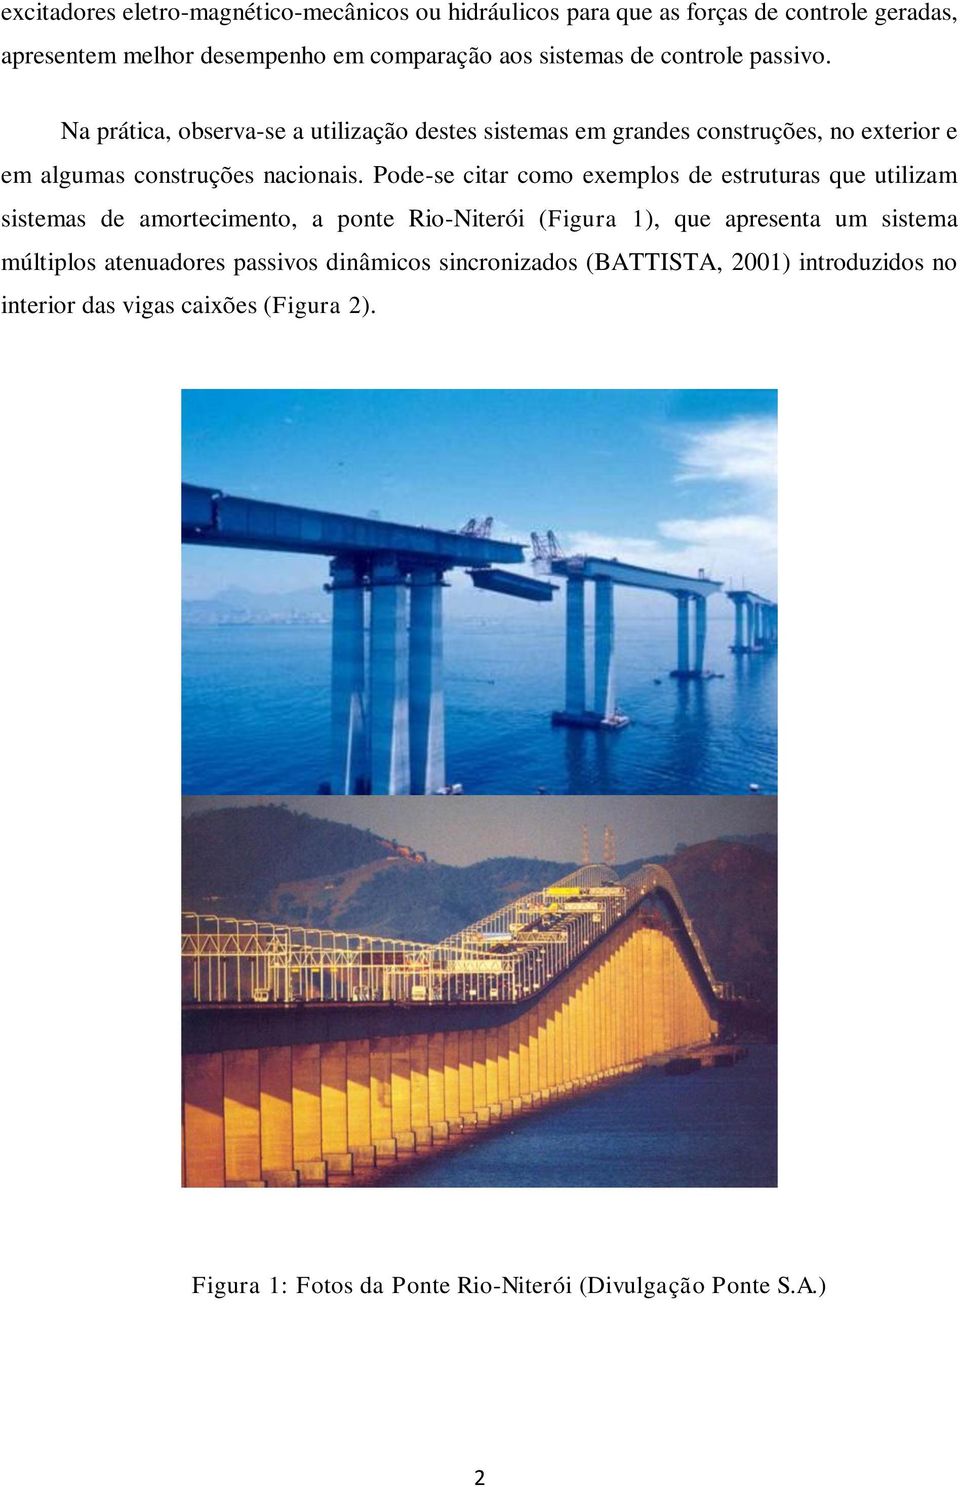 Pode-se citar como exemplos de estruturas que utilizam sistemas de amortecimento, a ponte Rio-Niterói (Figura 1), que apresenta um sistema múltiplos